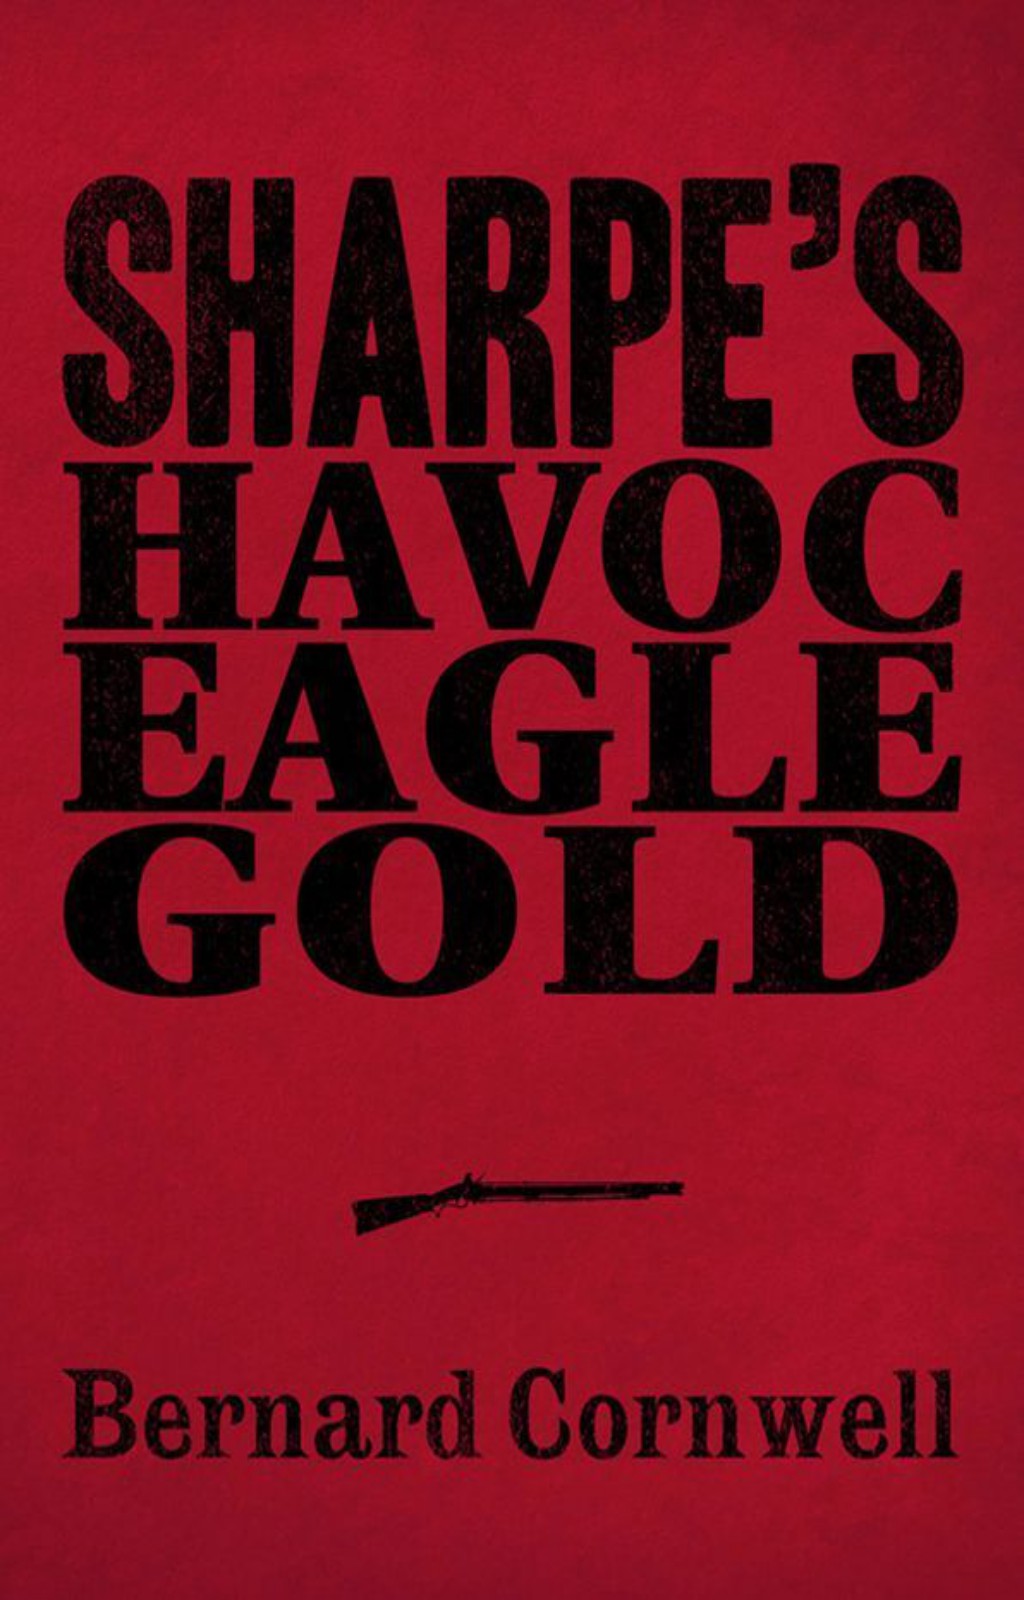 Sharpe 3-Book Collection 2: Sharpe’s Havoc, Sharpe’s Eagle, Sharpe’s Gold by Bernard Cornwell